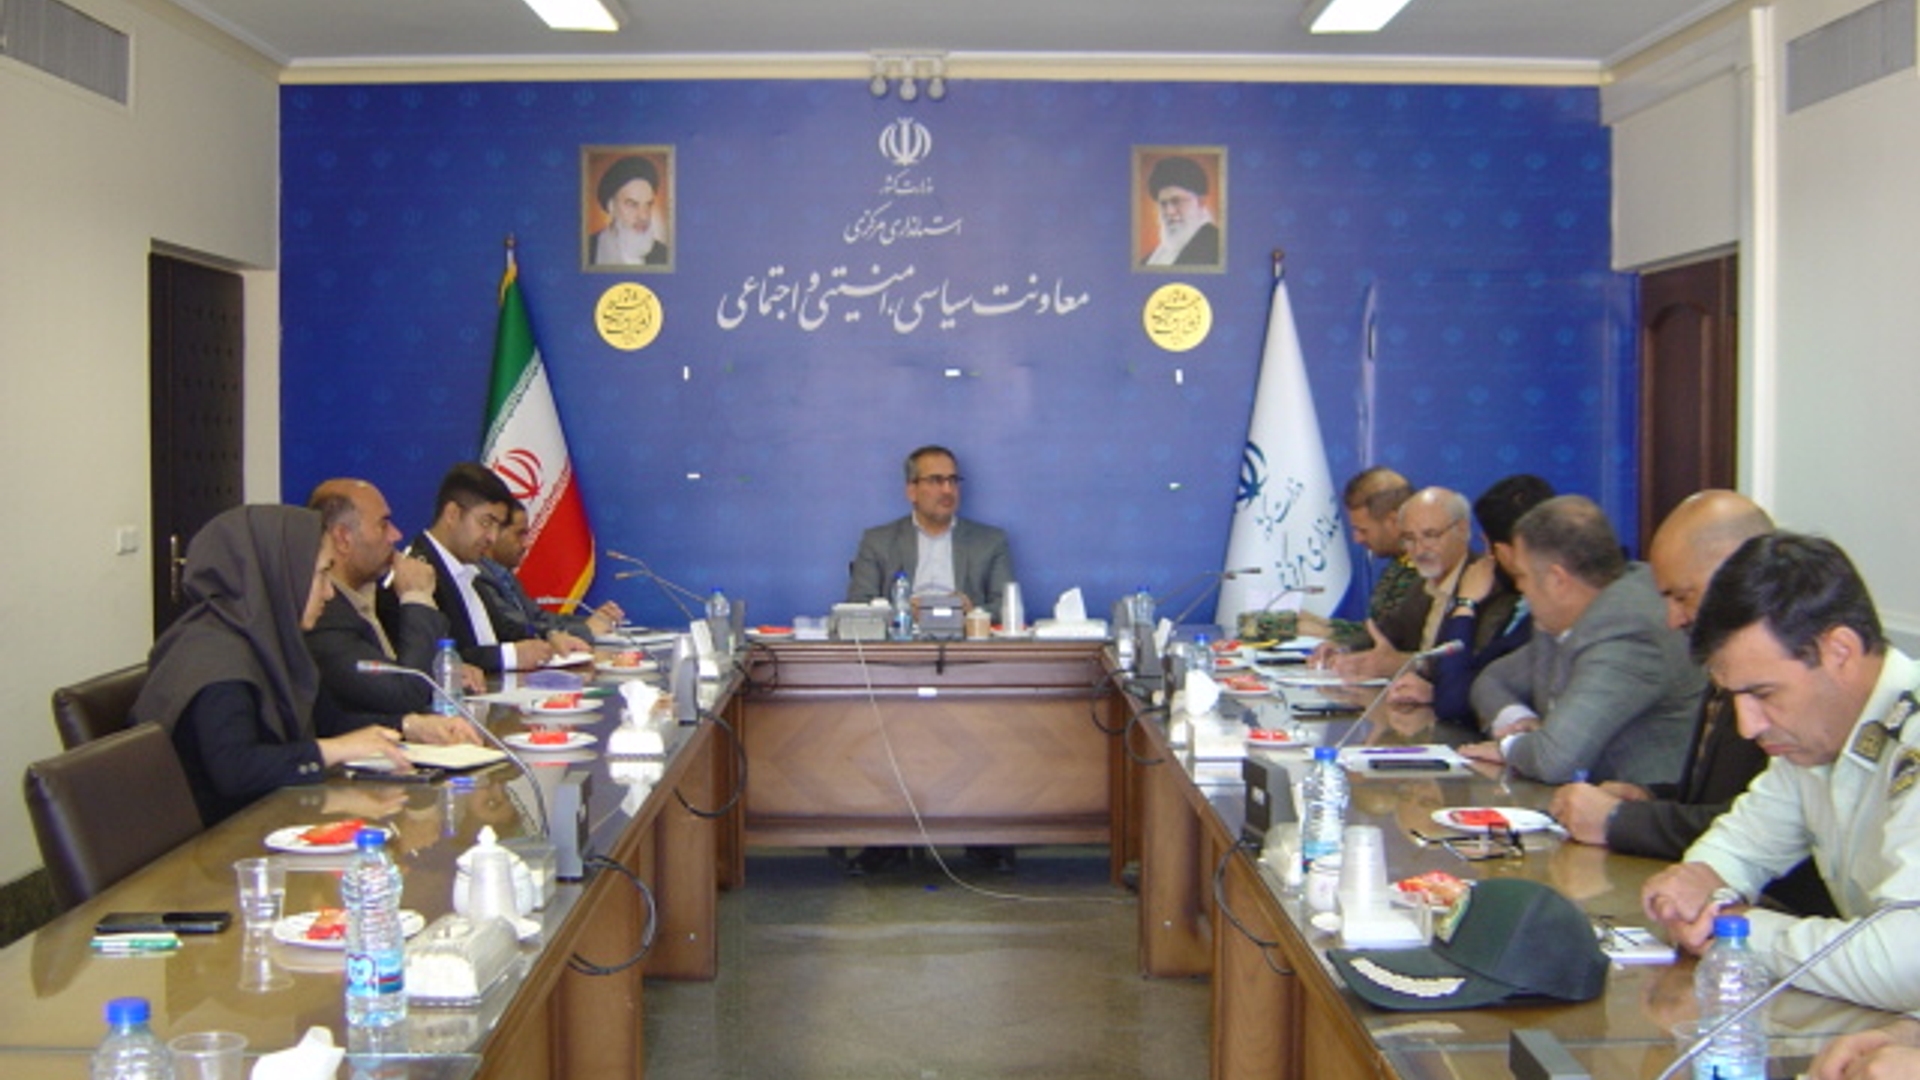 جلسه کمیته امنیت ورزش استان ساعت 9 صبح روز پنجشنبه مورخ 6-2-1403 به ریاست آقای رحیمی تبار سرپرست اداره کل امنیتی و انتظامی برگزار گردید.